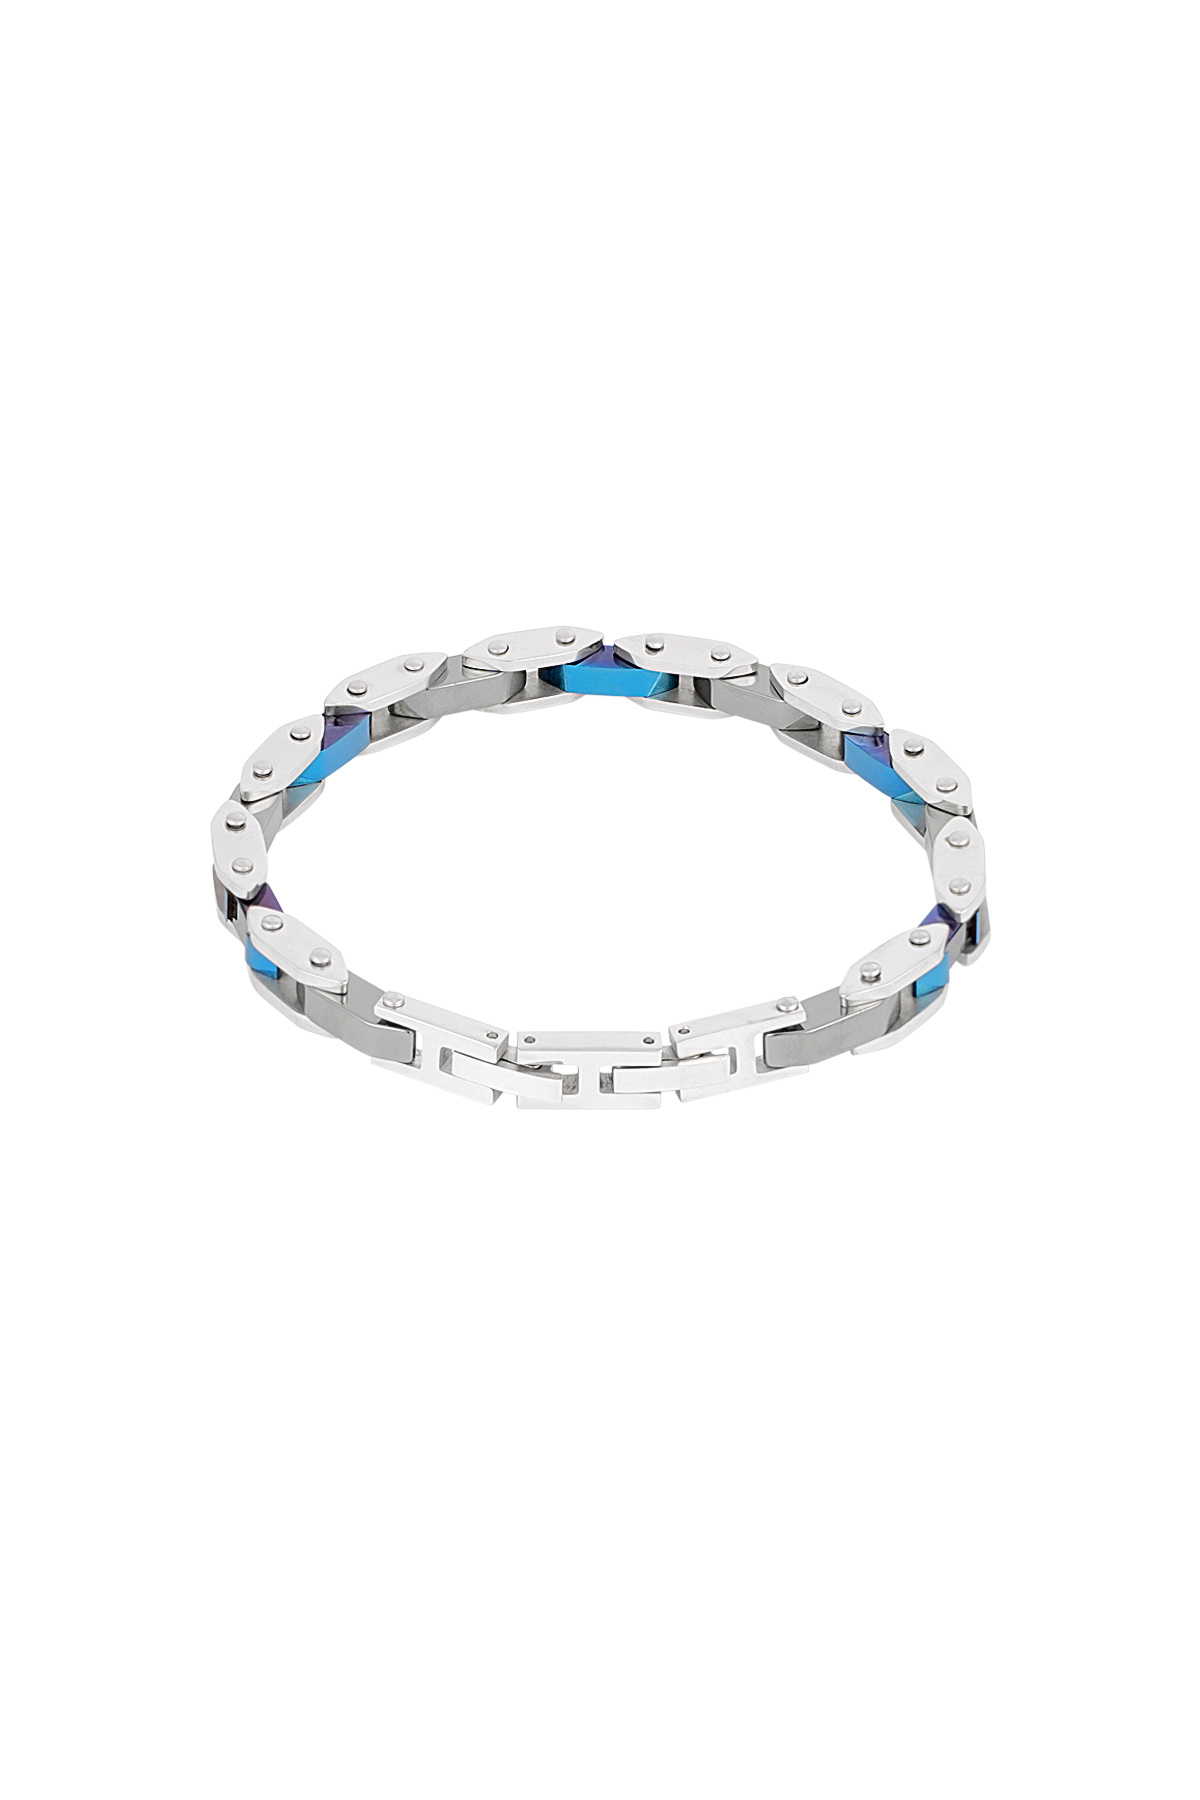 Men's bracelet evo strap - silver blue